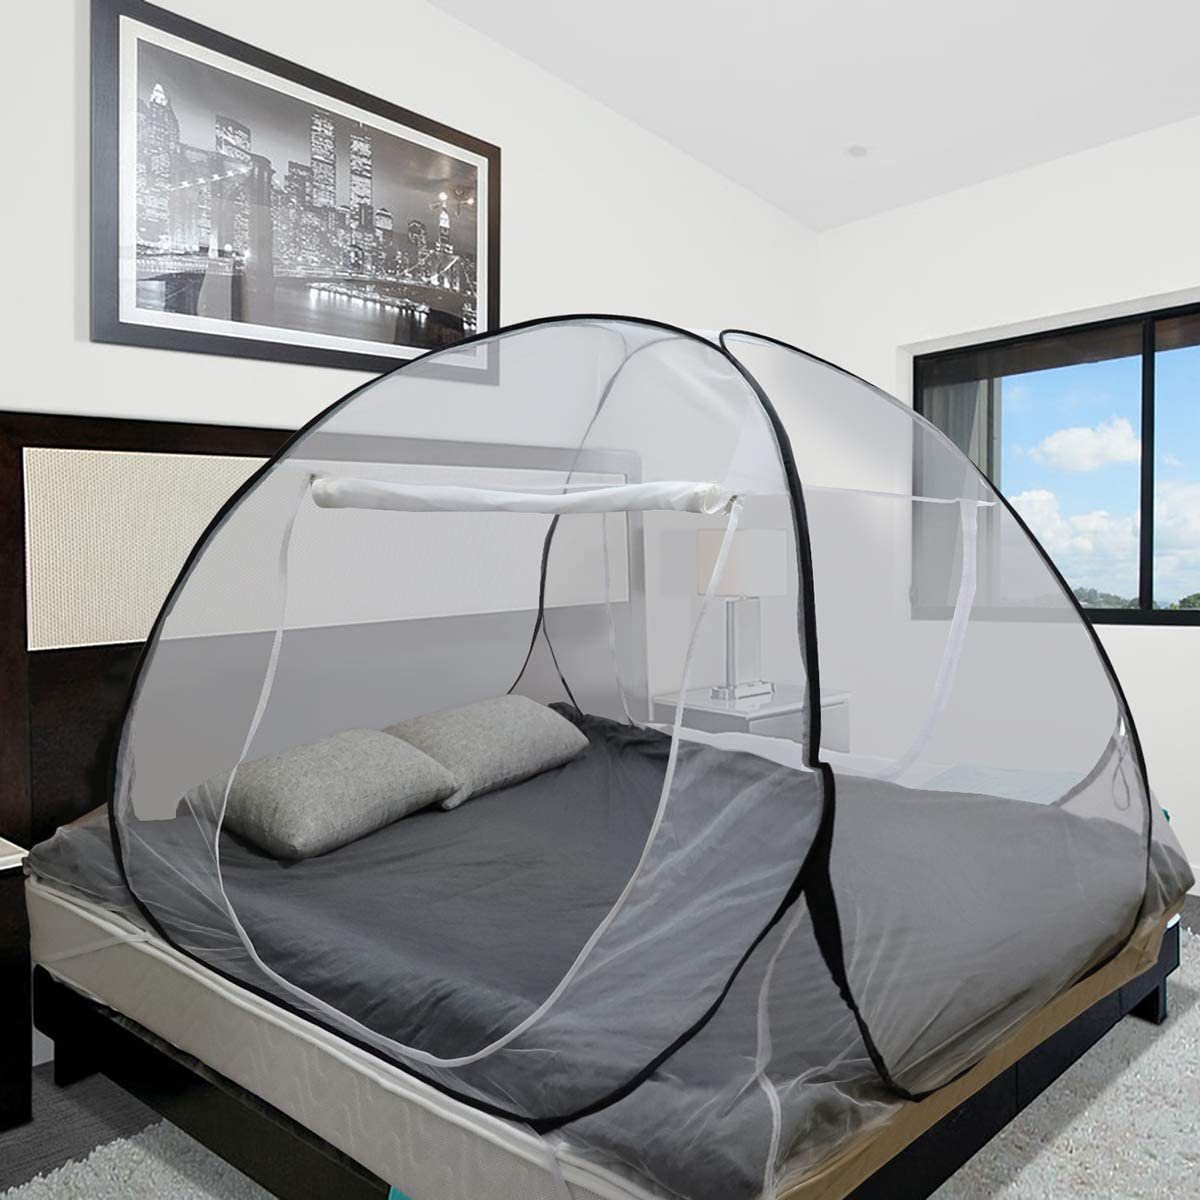 Sekey Moskitonetz Pop-up 180 145cm Bett für Baldachin, 200 Doppelbett x x Faltbare Insektenschutz